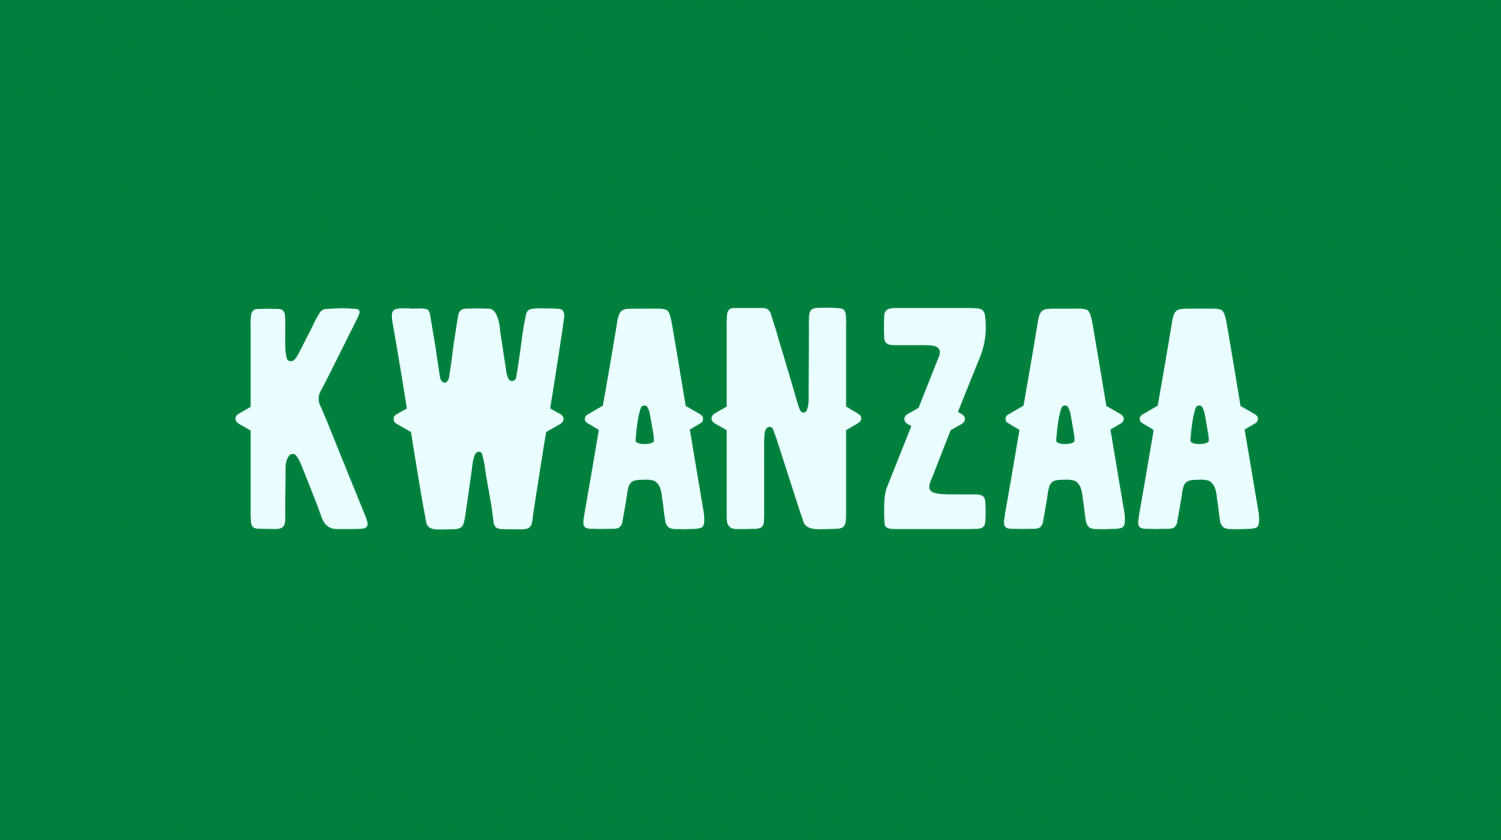 Kwanzaa in 2020